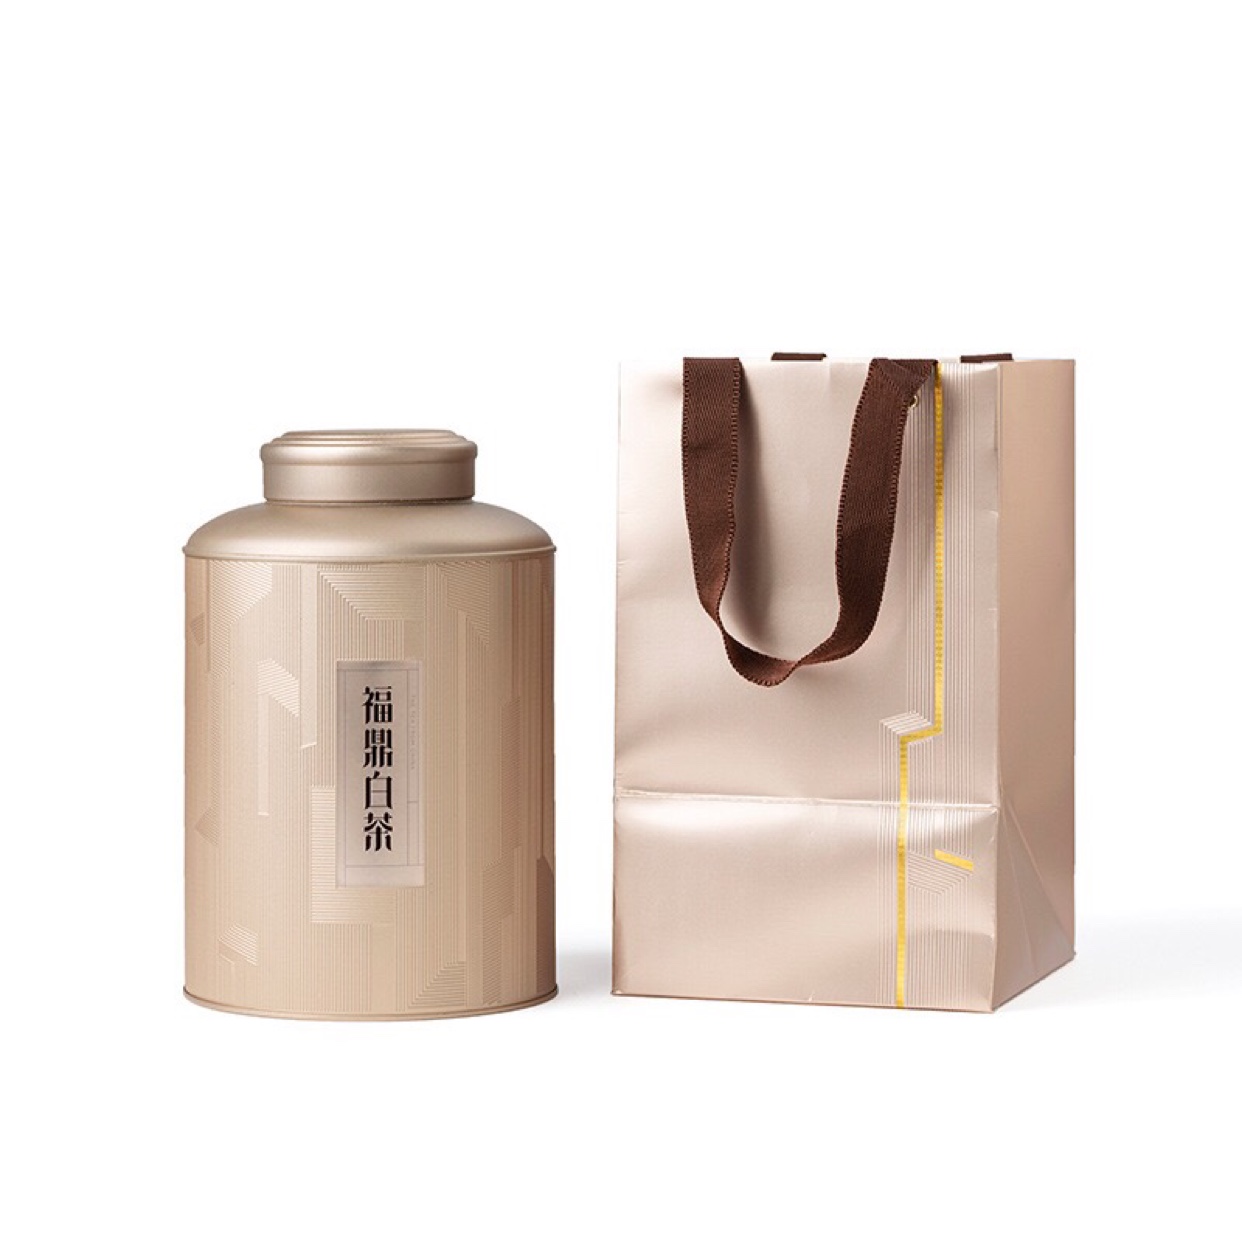 马口铁新款浮雕通用空白茶叶罐头1斤2斤装双层盖密封茶叶铁罐包装